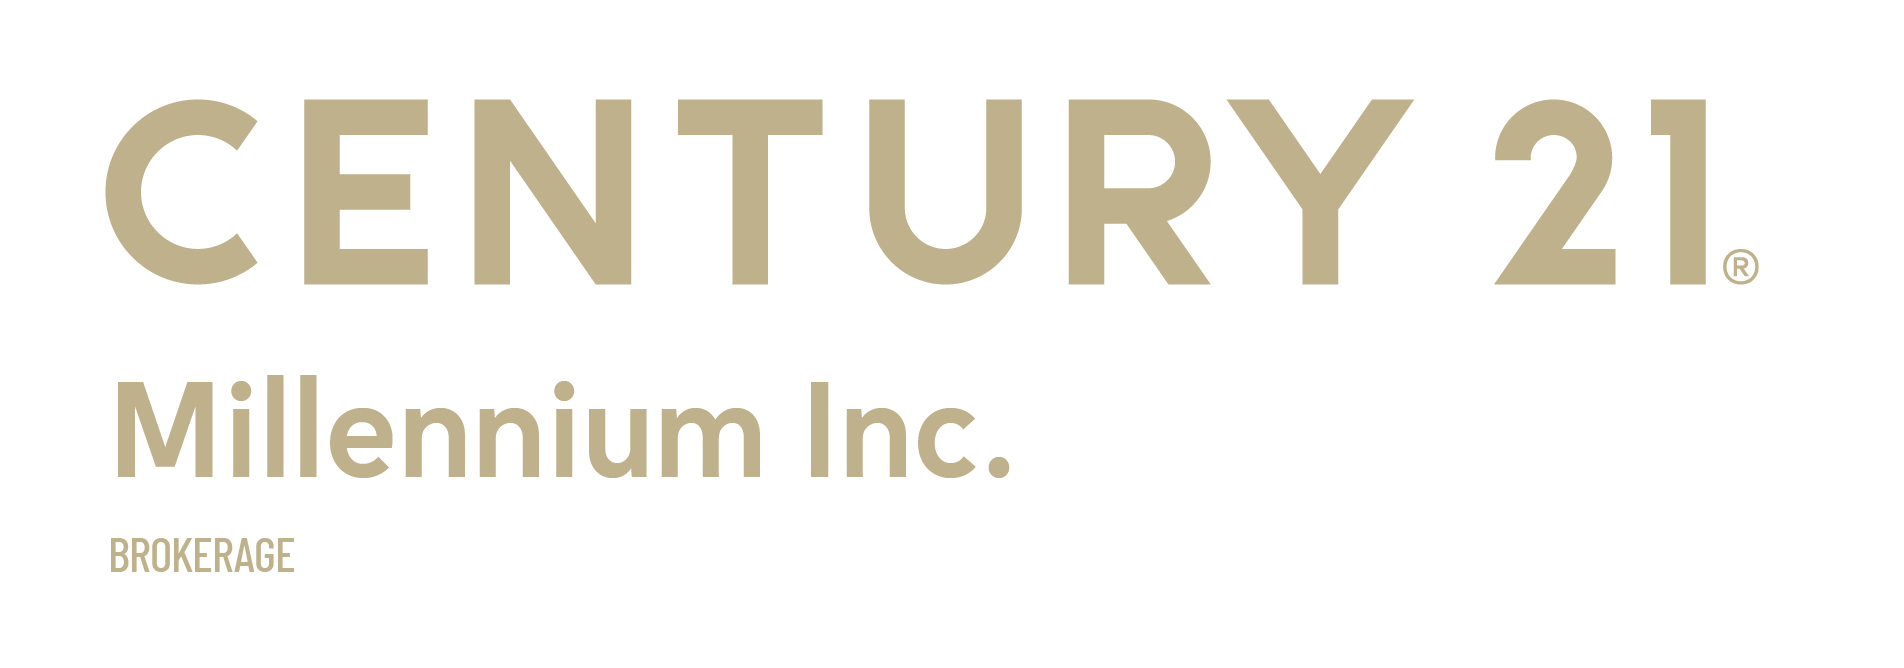 Century 21 Millennium Inc